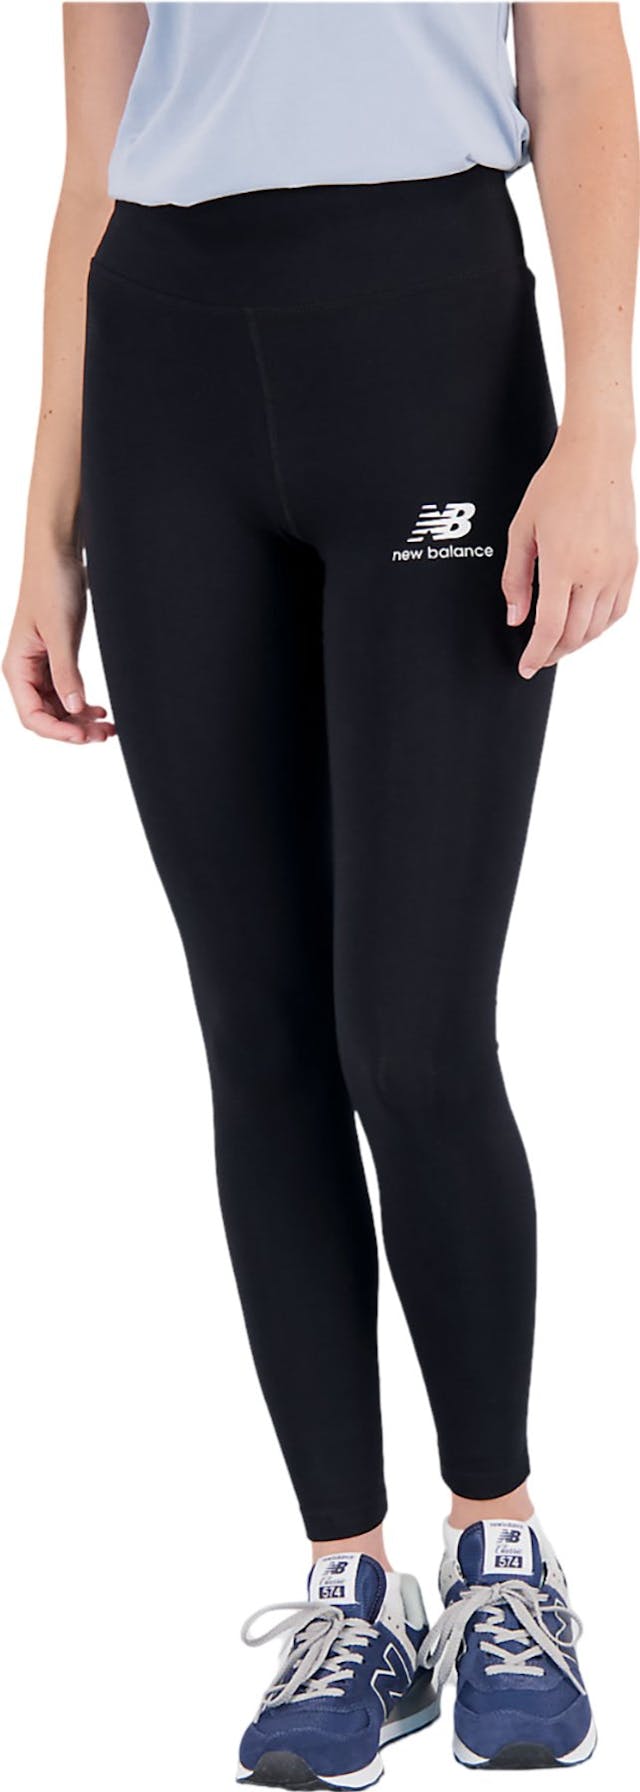 Image de produit pour Legging en coton à logo en surimpression Essentials - Femme